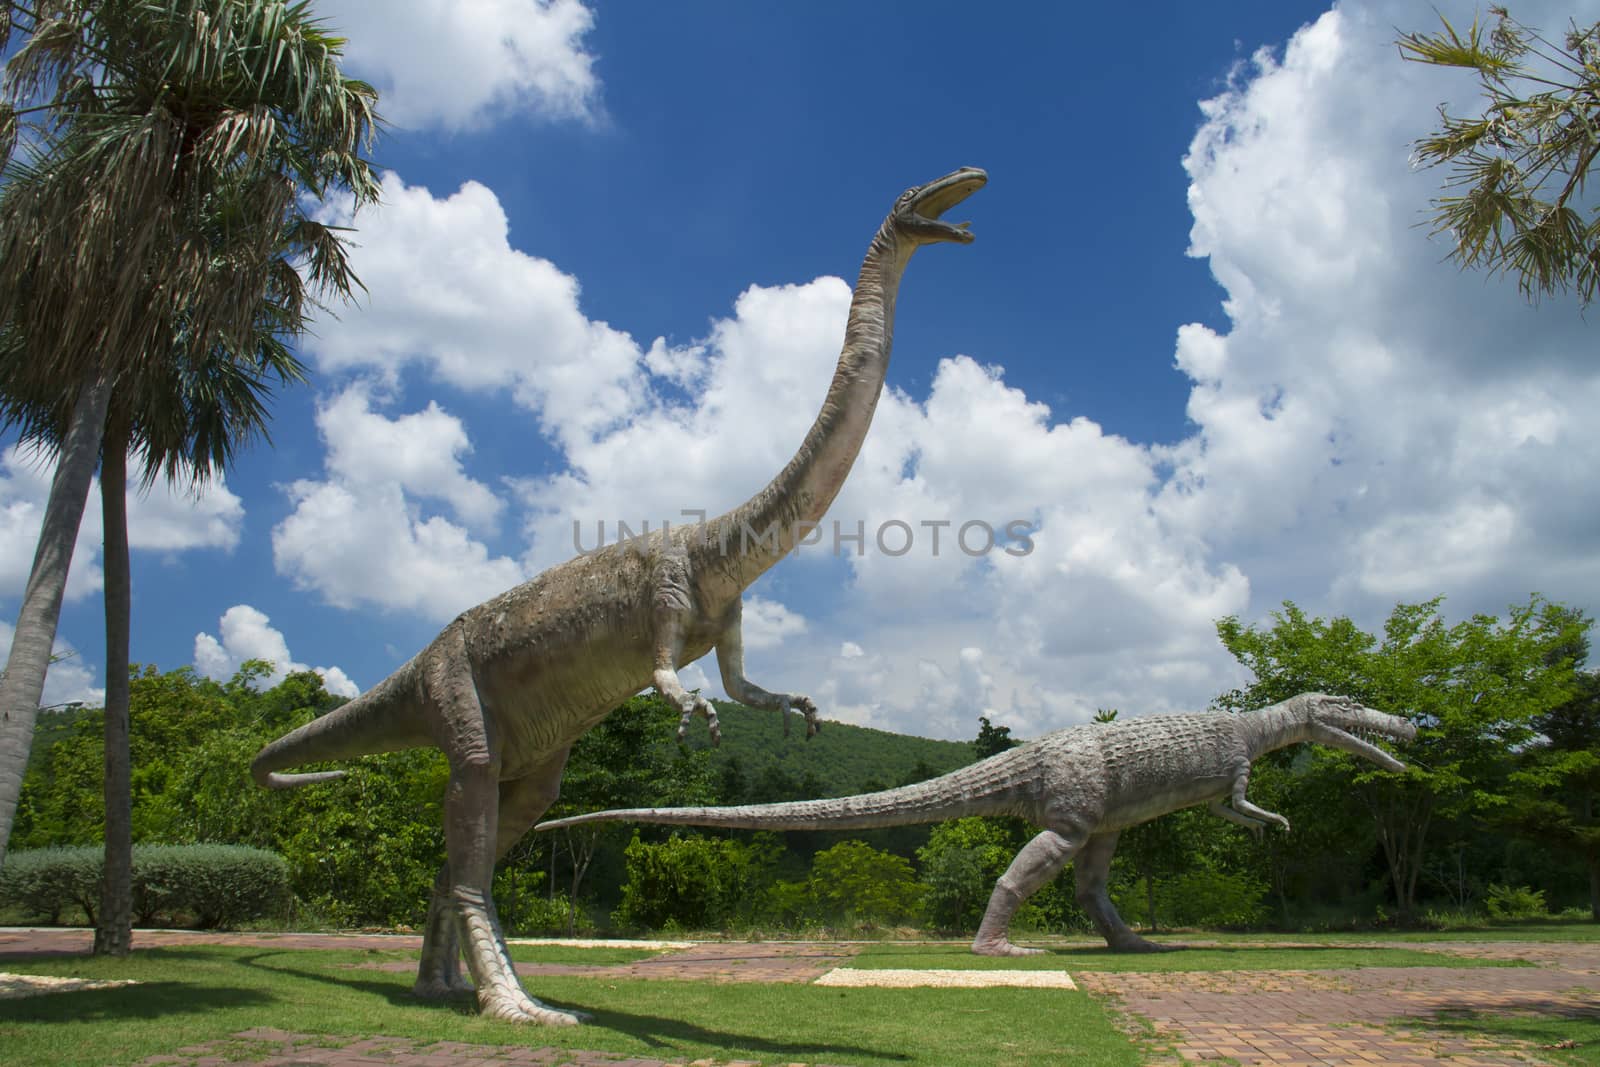 Dinosaur Museum by jee1999